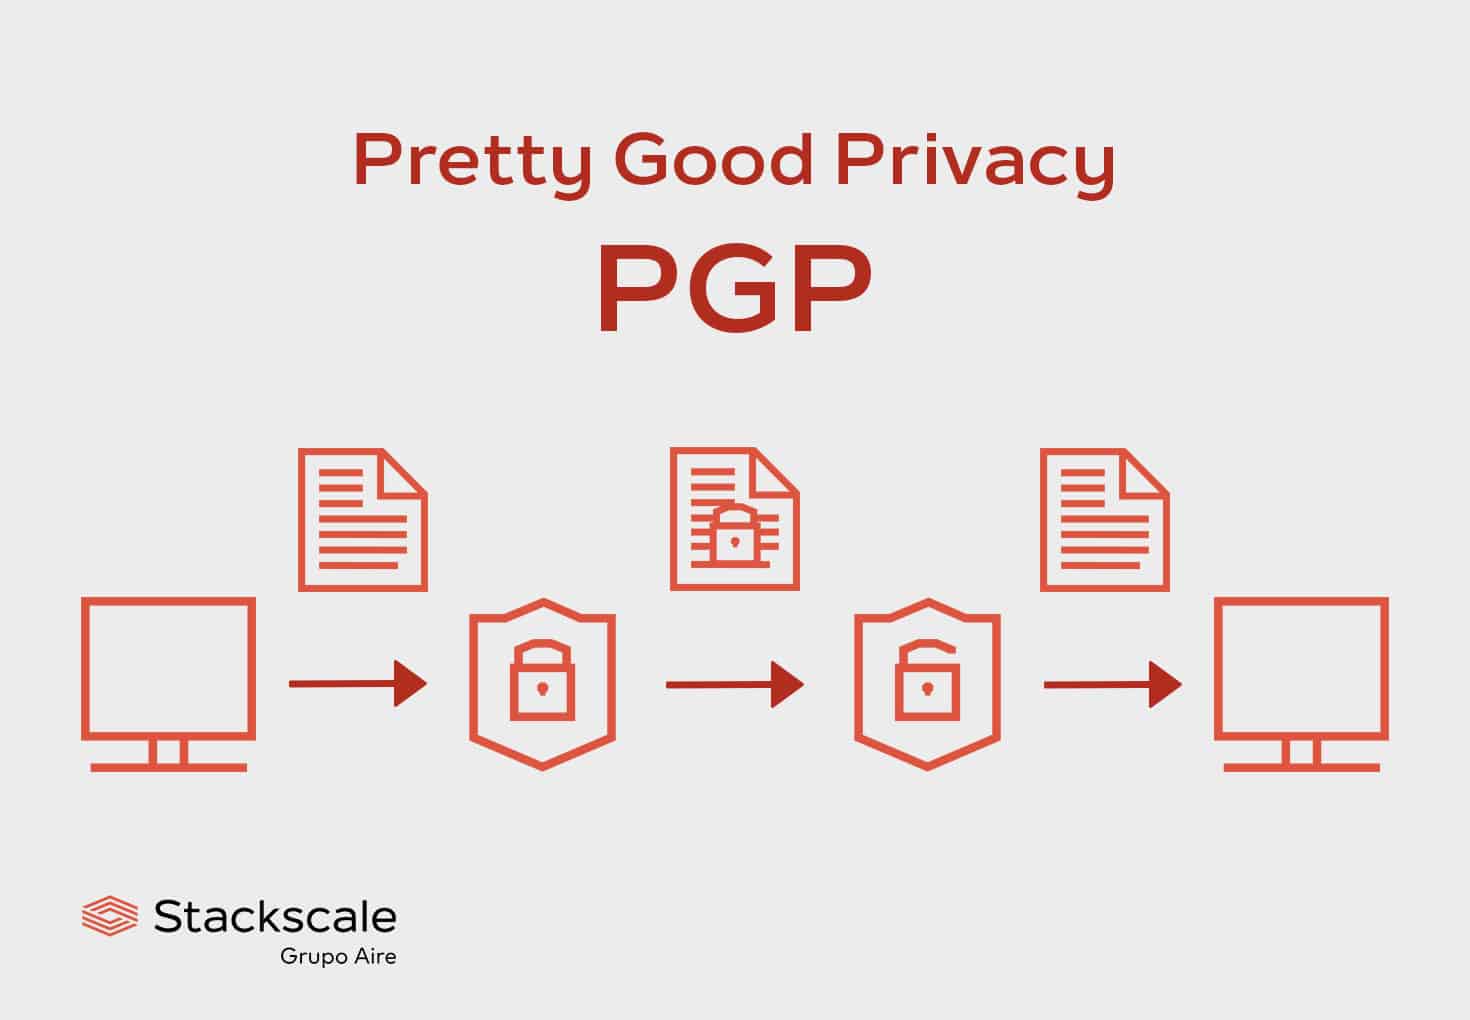 Pretty Good Privacy, PGP